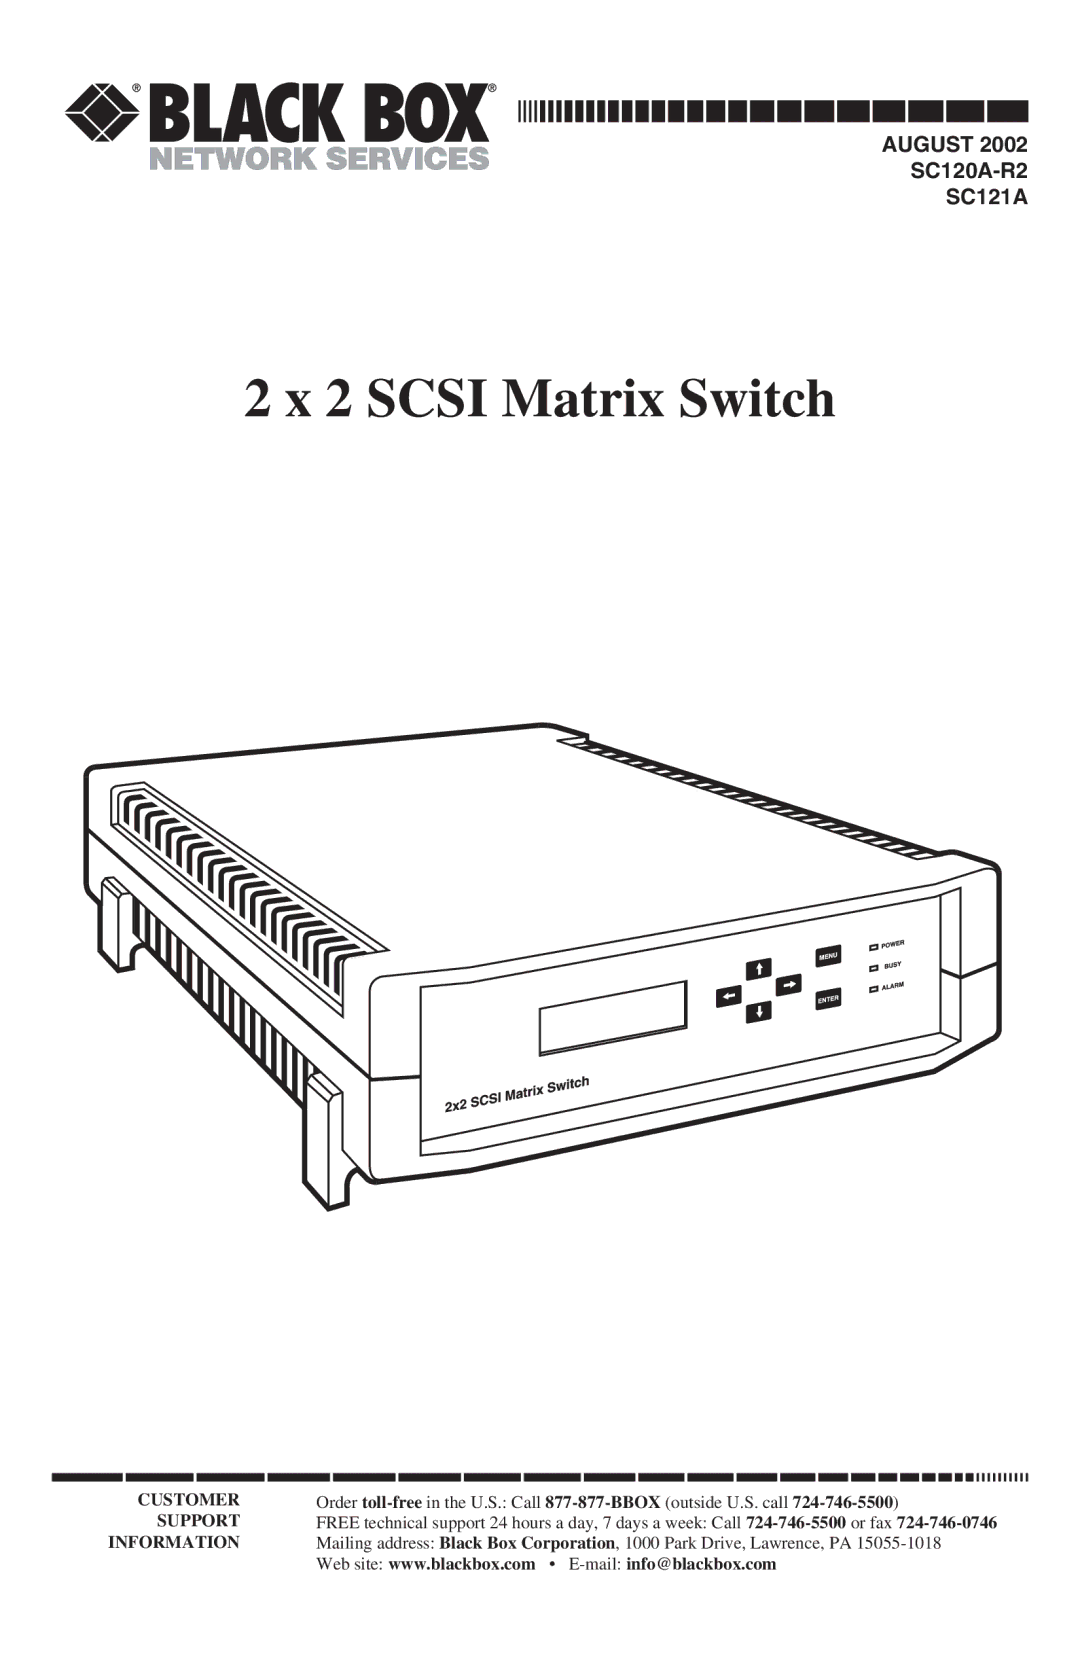 Black Box SC120A-R2, SC121A manual Scsi Matrix Switch 